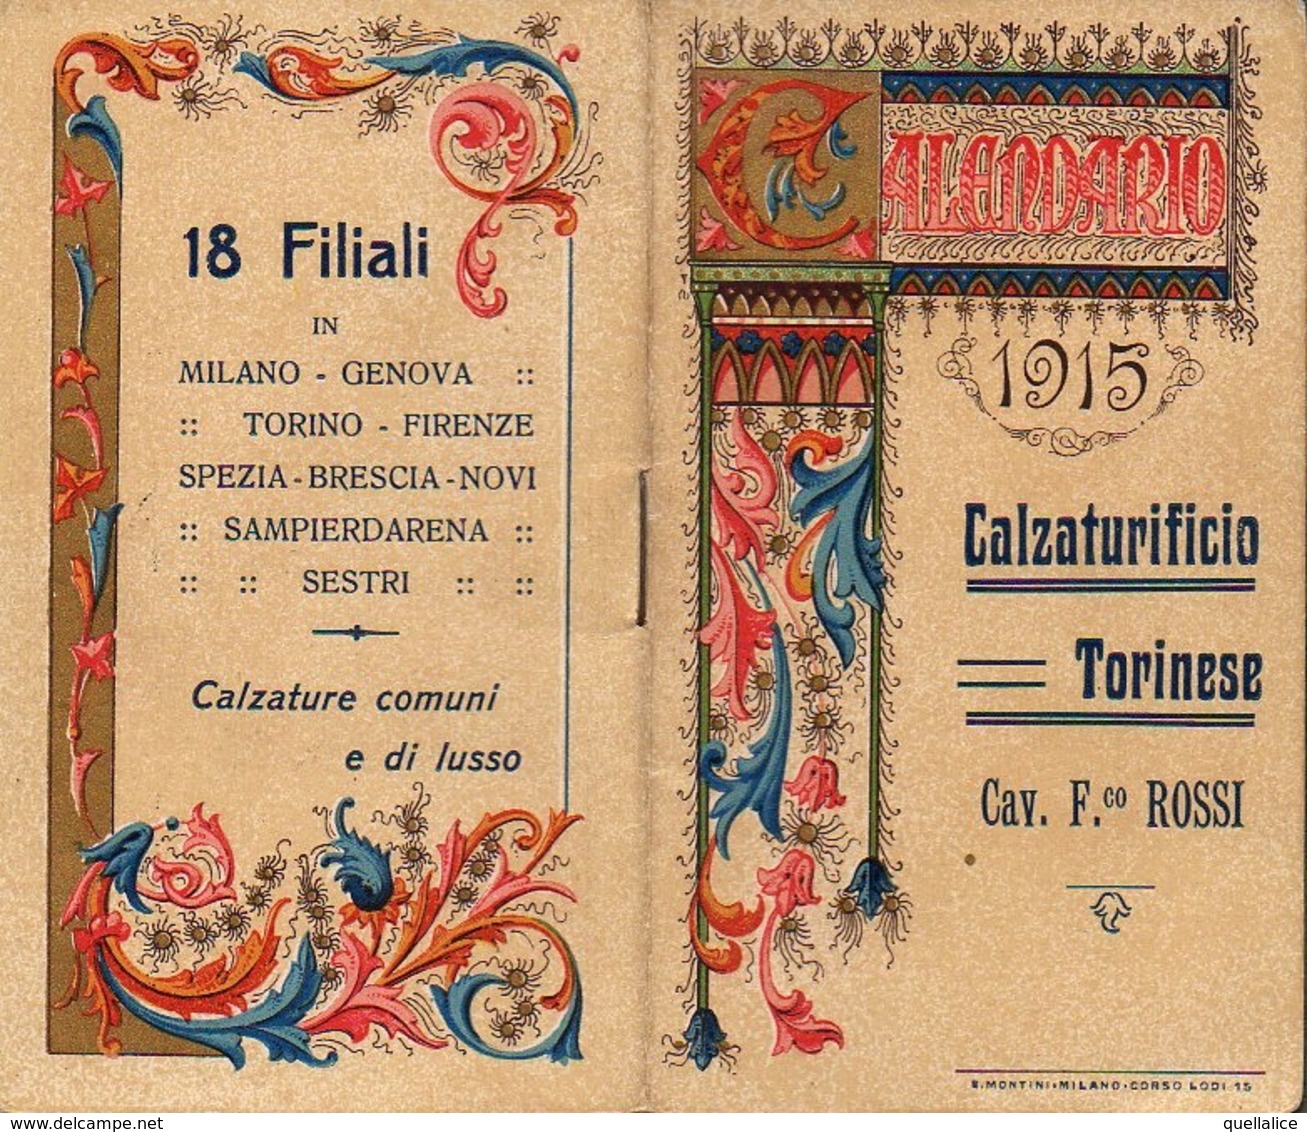 01216 "TORINO - CALZATURIFICIO CAV. F.CO ROSSI - 1915 - CALENDARIETTO DECORATO" - Small : 1901-20